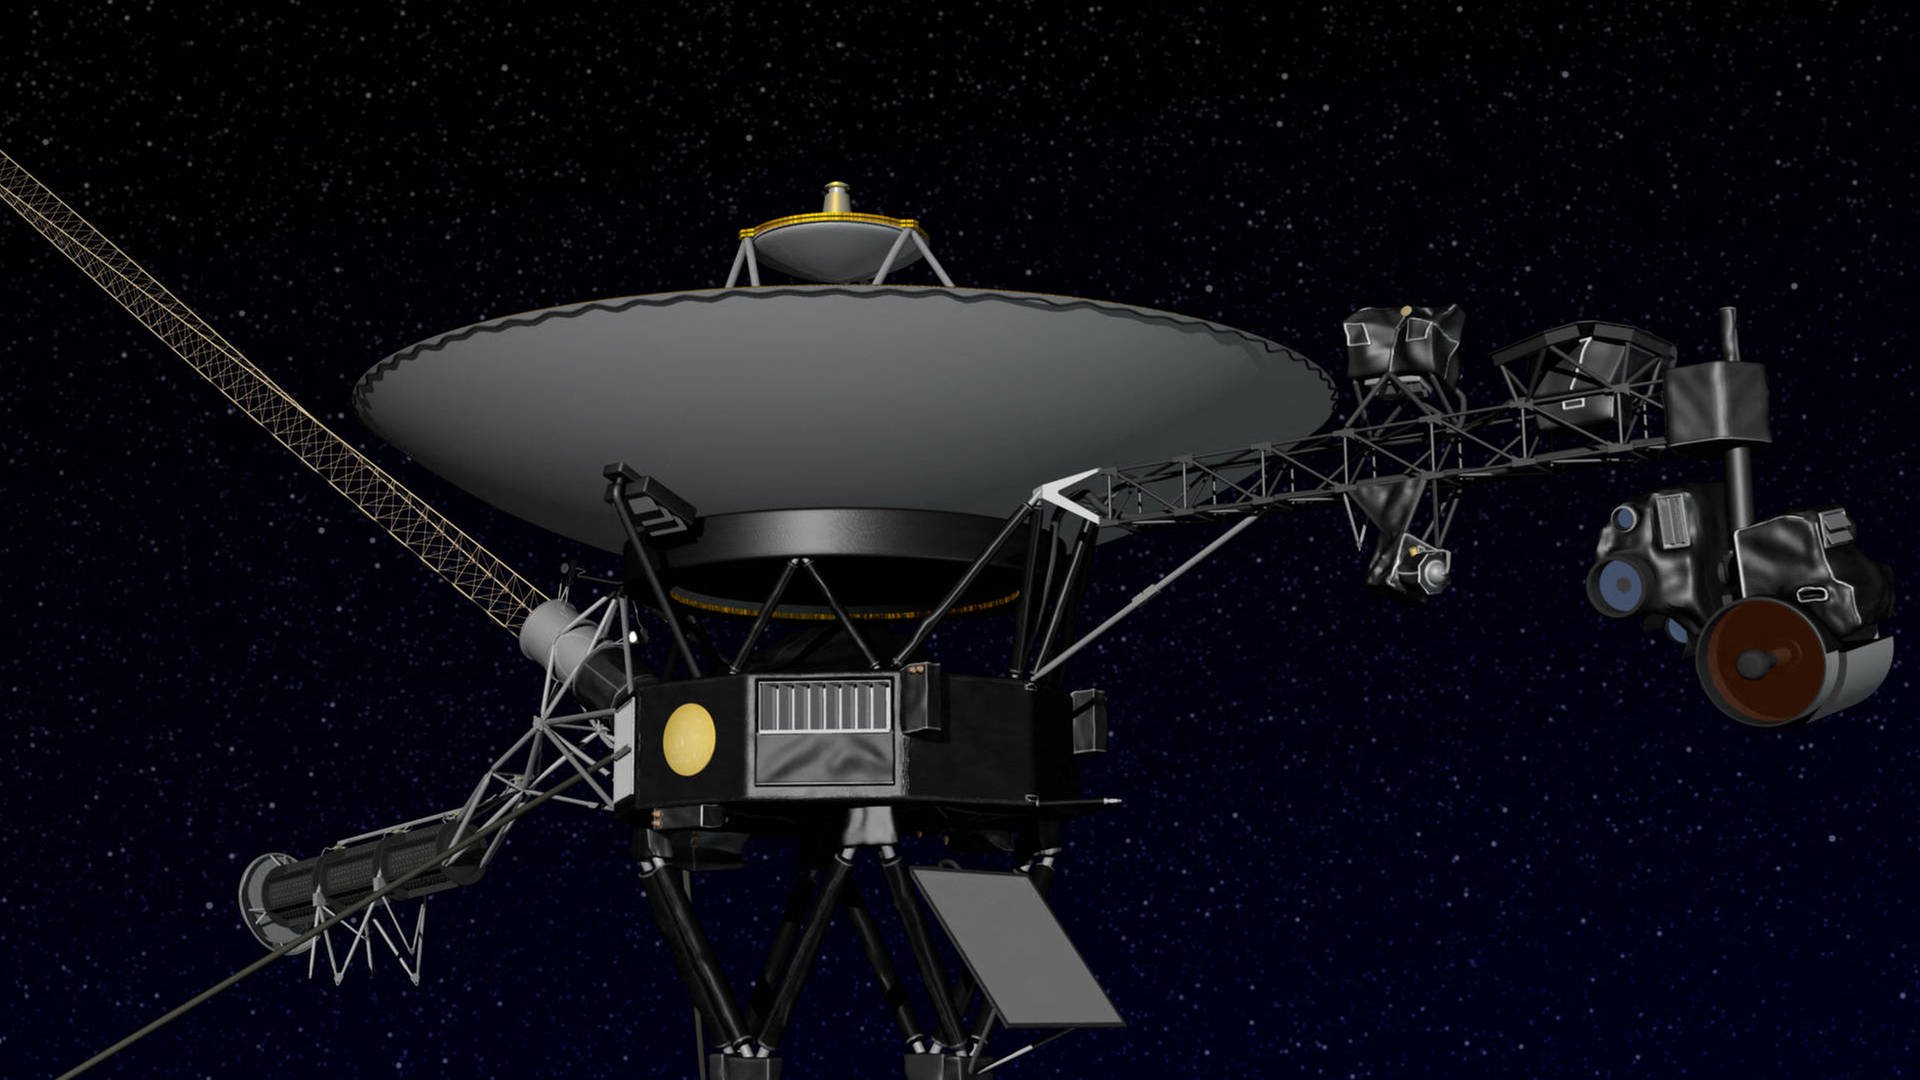 Reparatur der Voyager 1 Weltraumsonde war erfolgreich